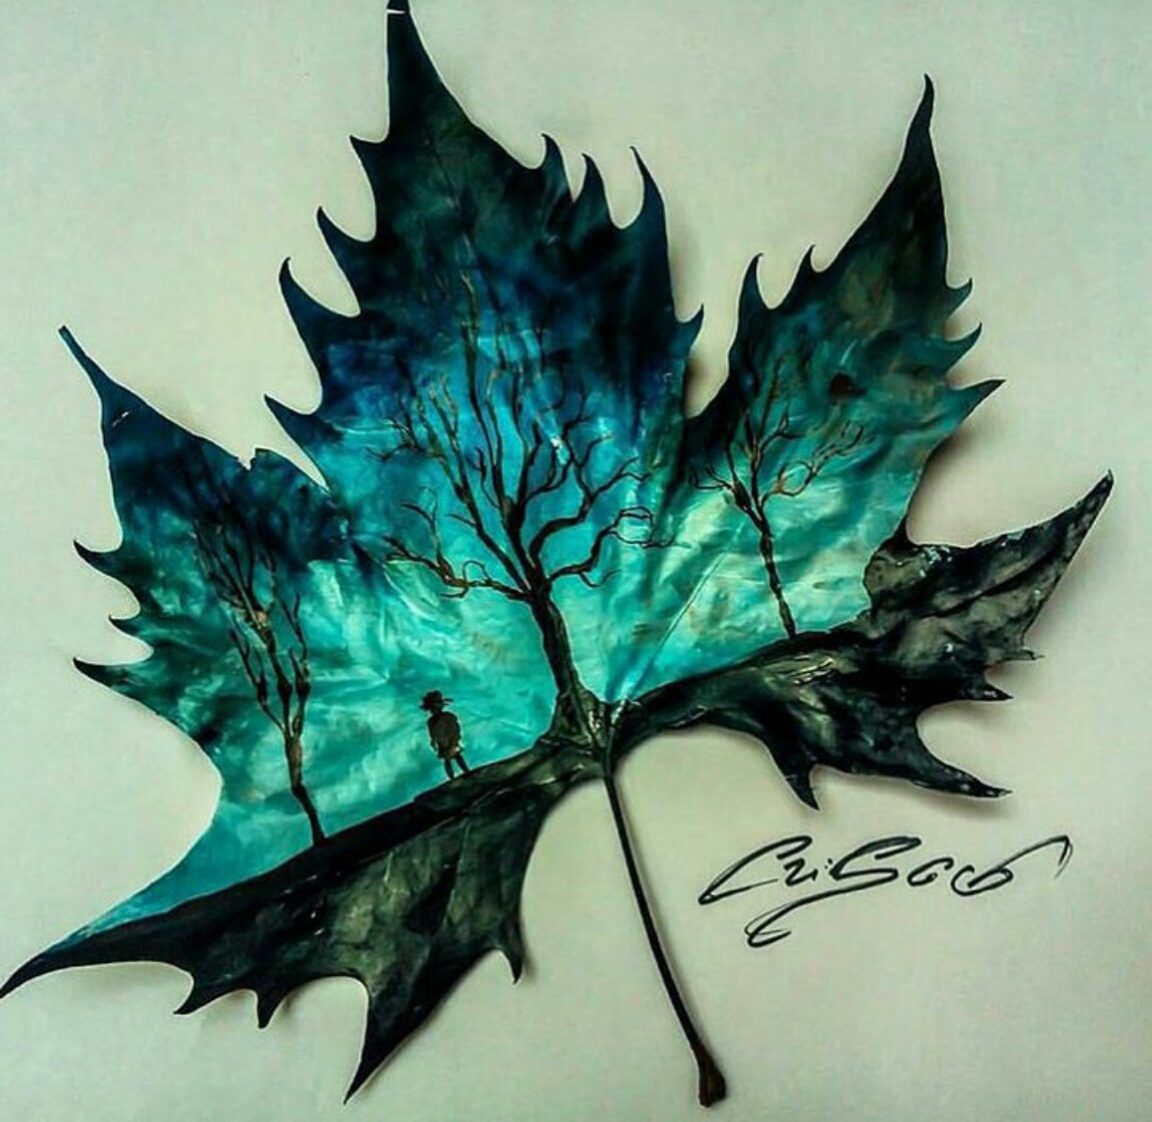 Лист арт. Рисование кленового листа. Кленовый лист арт. Рисование листьями деревьев. Рисование на листьях клена.